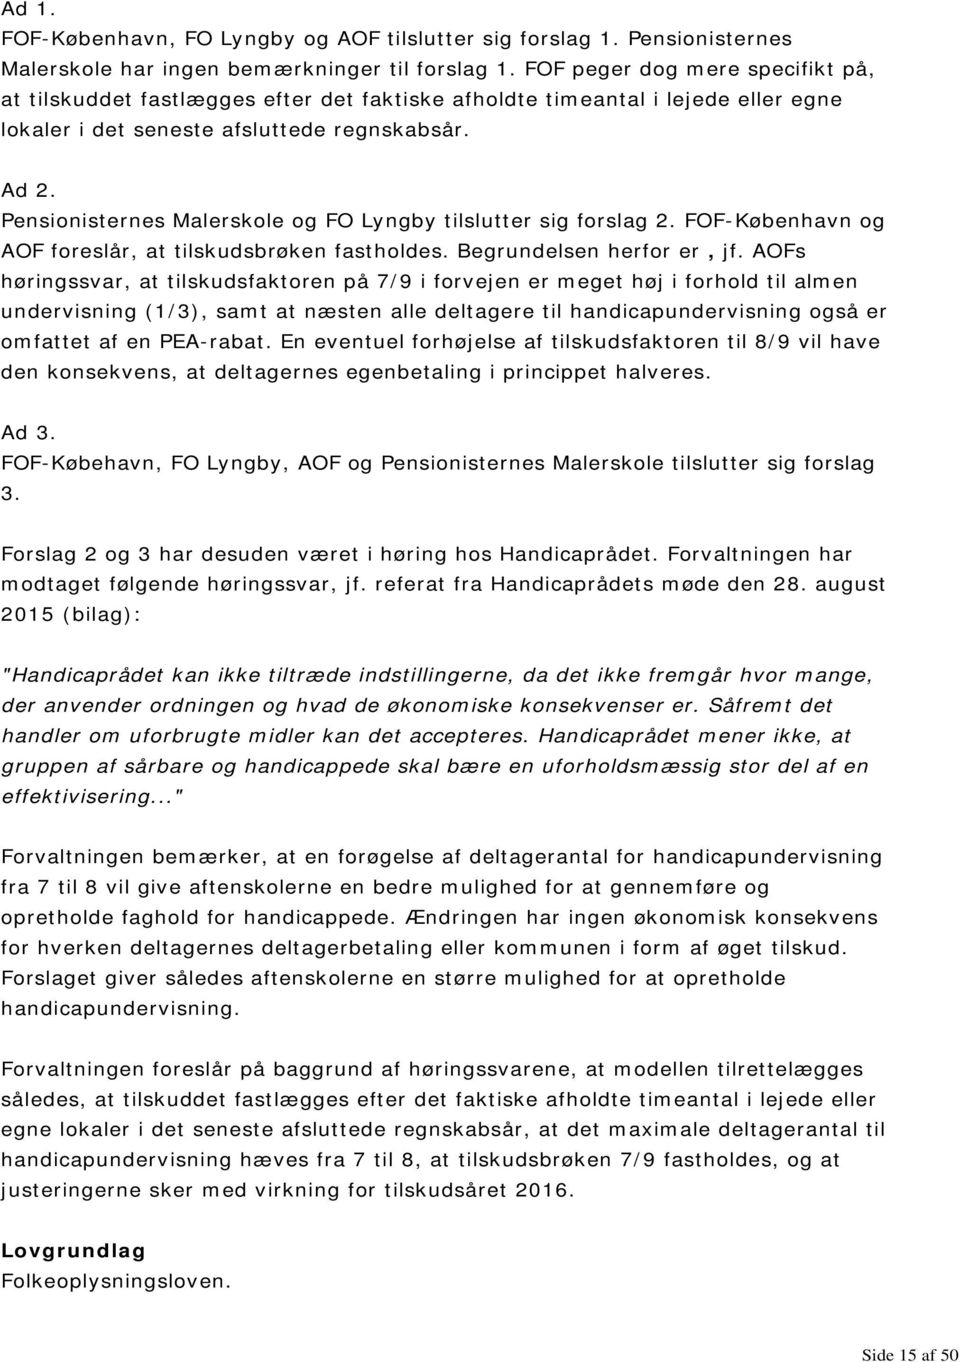 Pensionisternes Malerskole og FO Lyngby tilslutter sig forslag 2. FOF-København og AOF foreslår, at tilskudsbrøken fastholdes. Begrundelsen herfor er, jf.